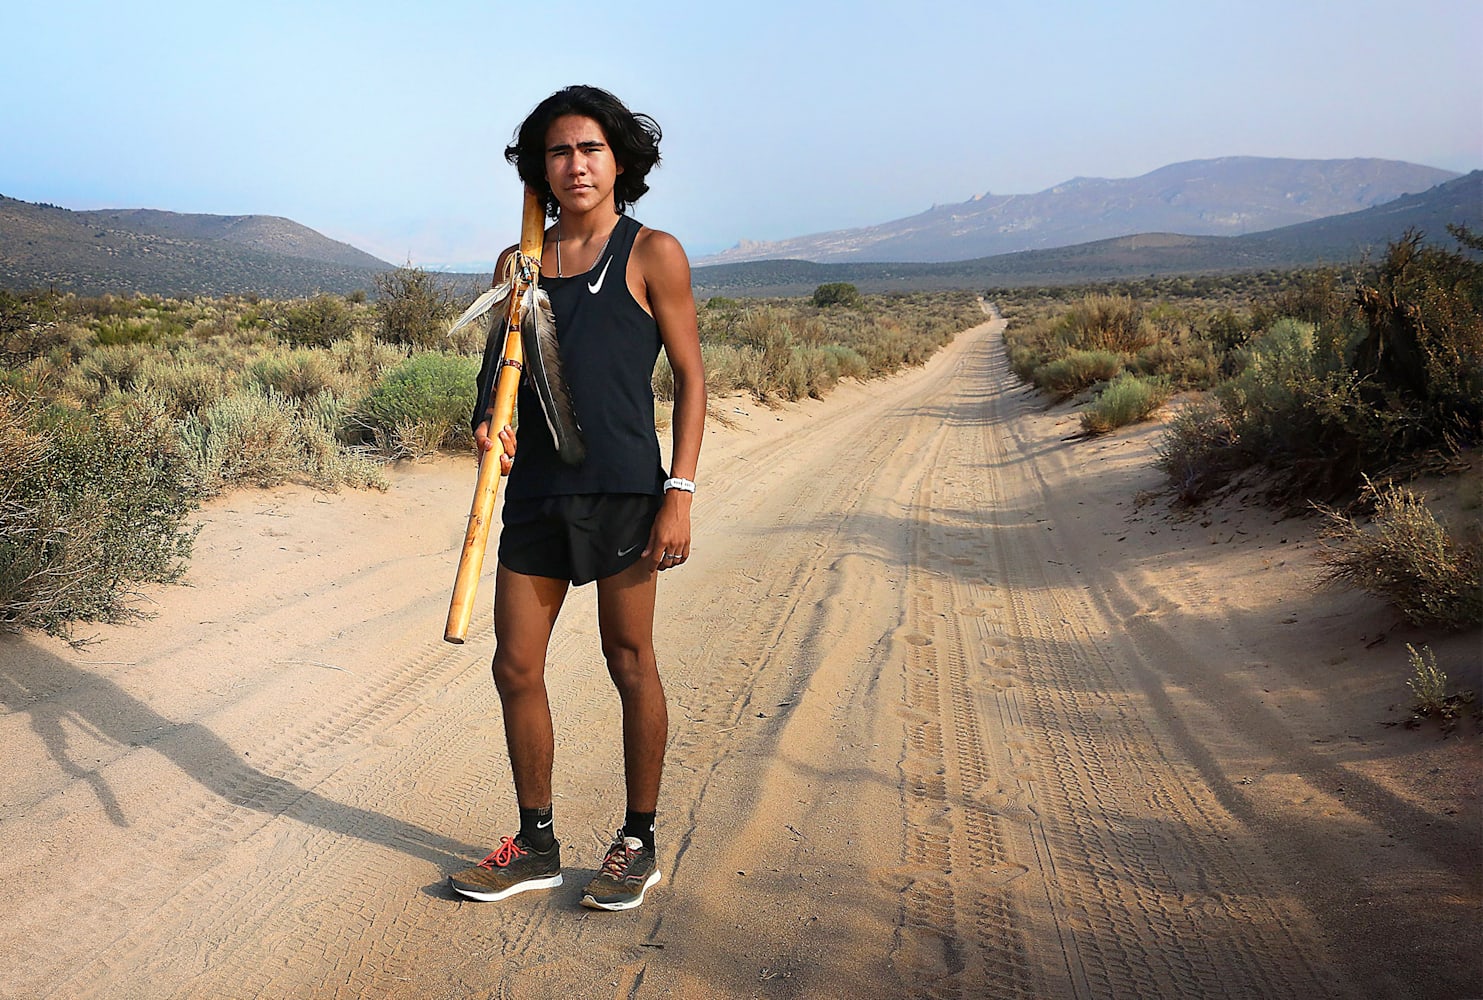 Ku Stevens Interview - Native American runner